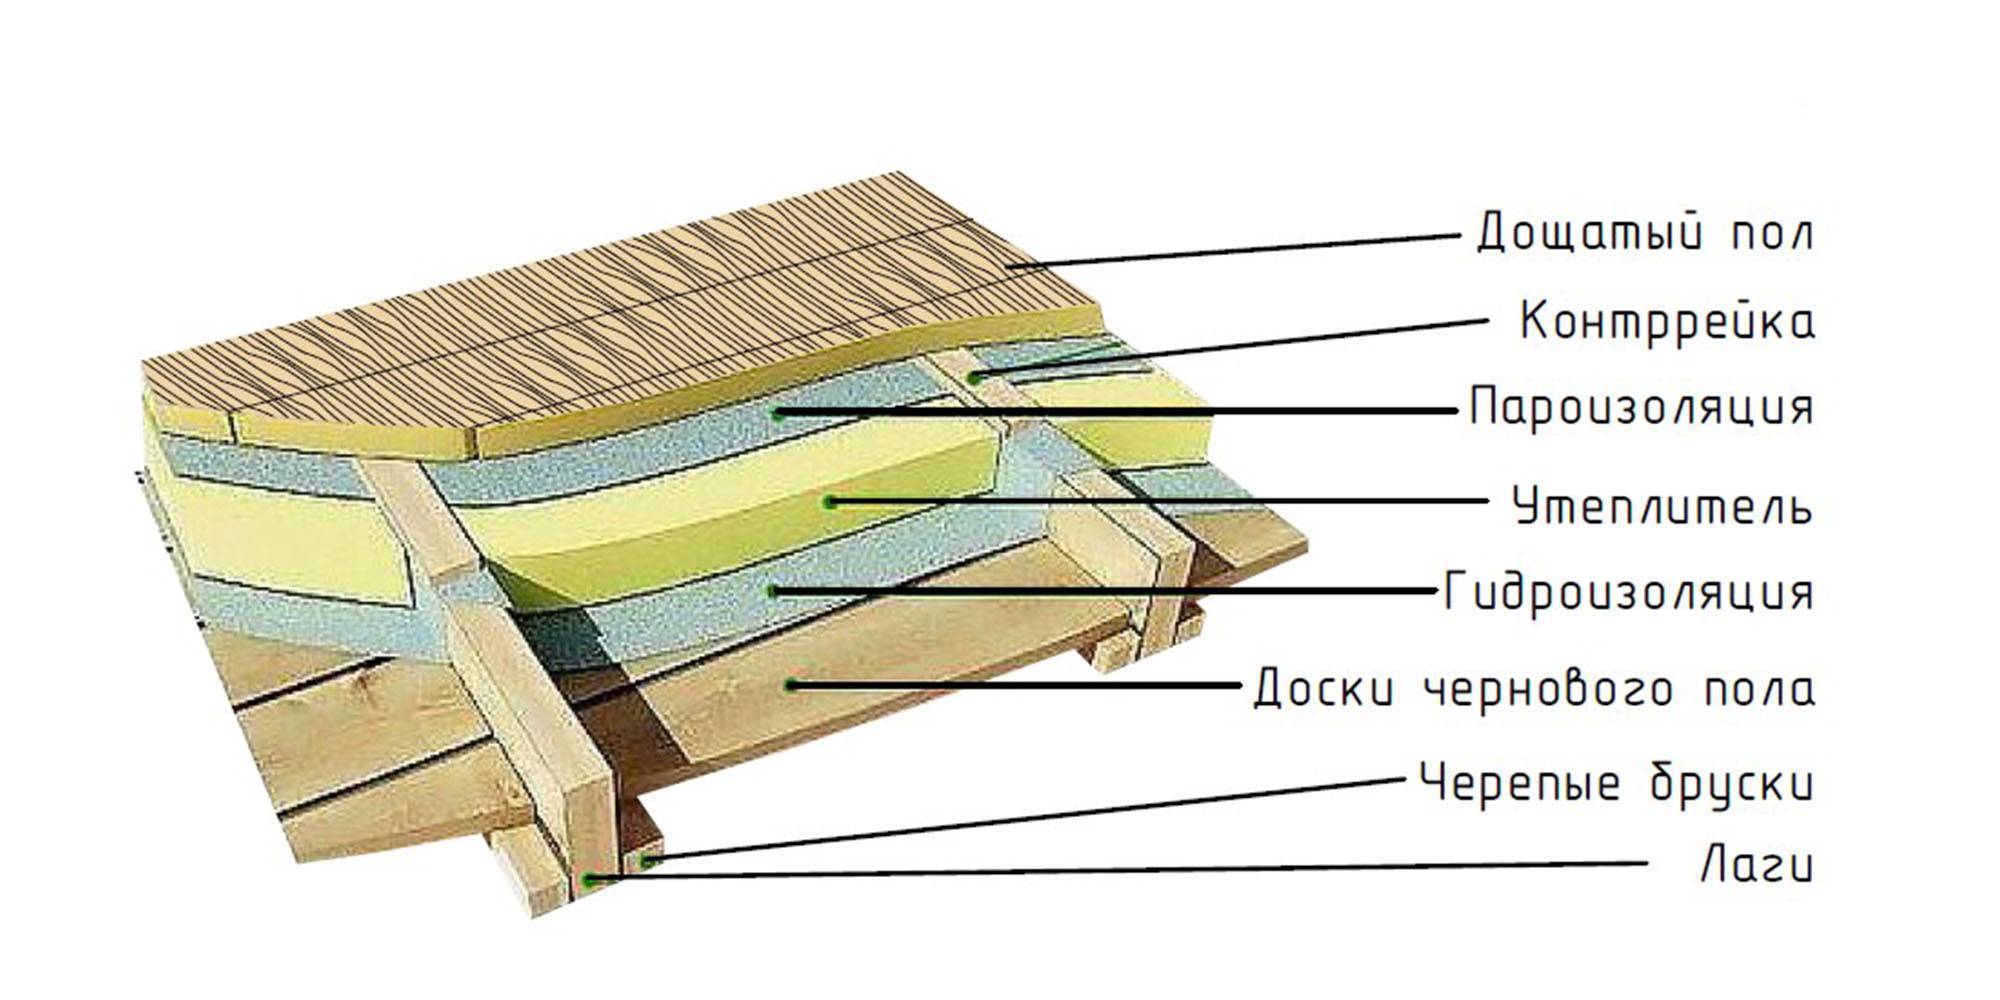 Утепление деревянного пола на лагах - инструкция подробно!